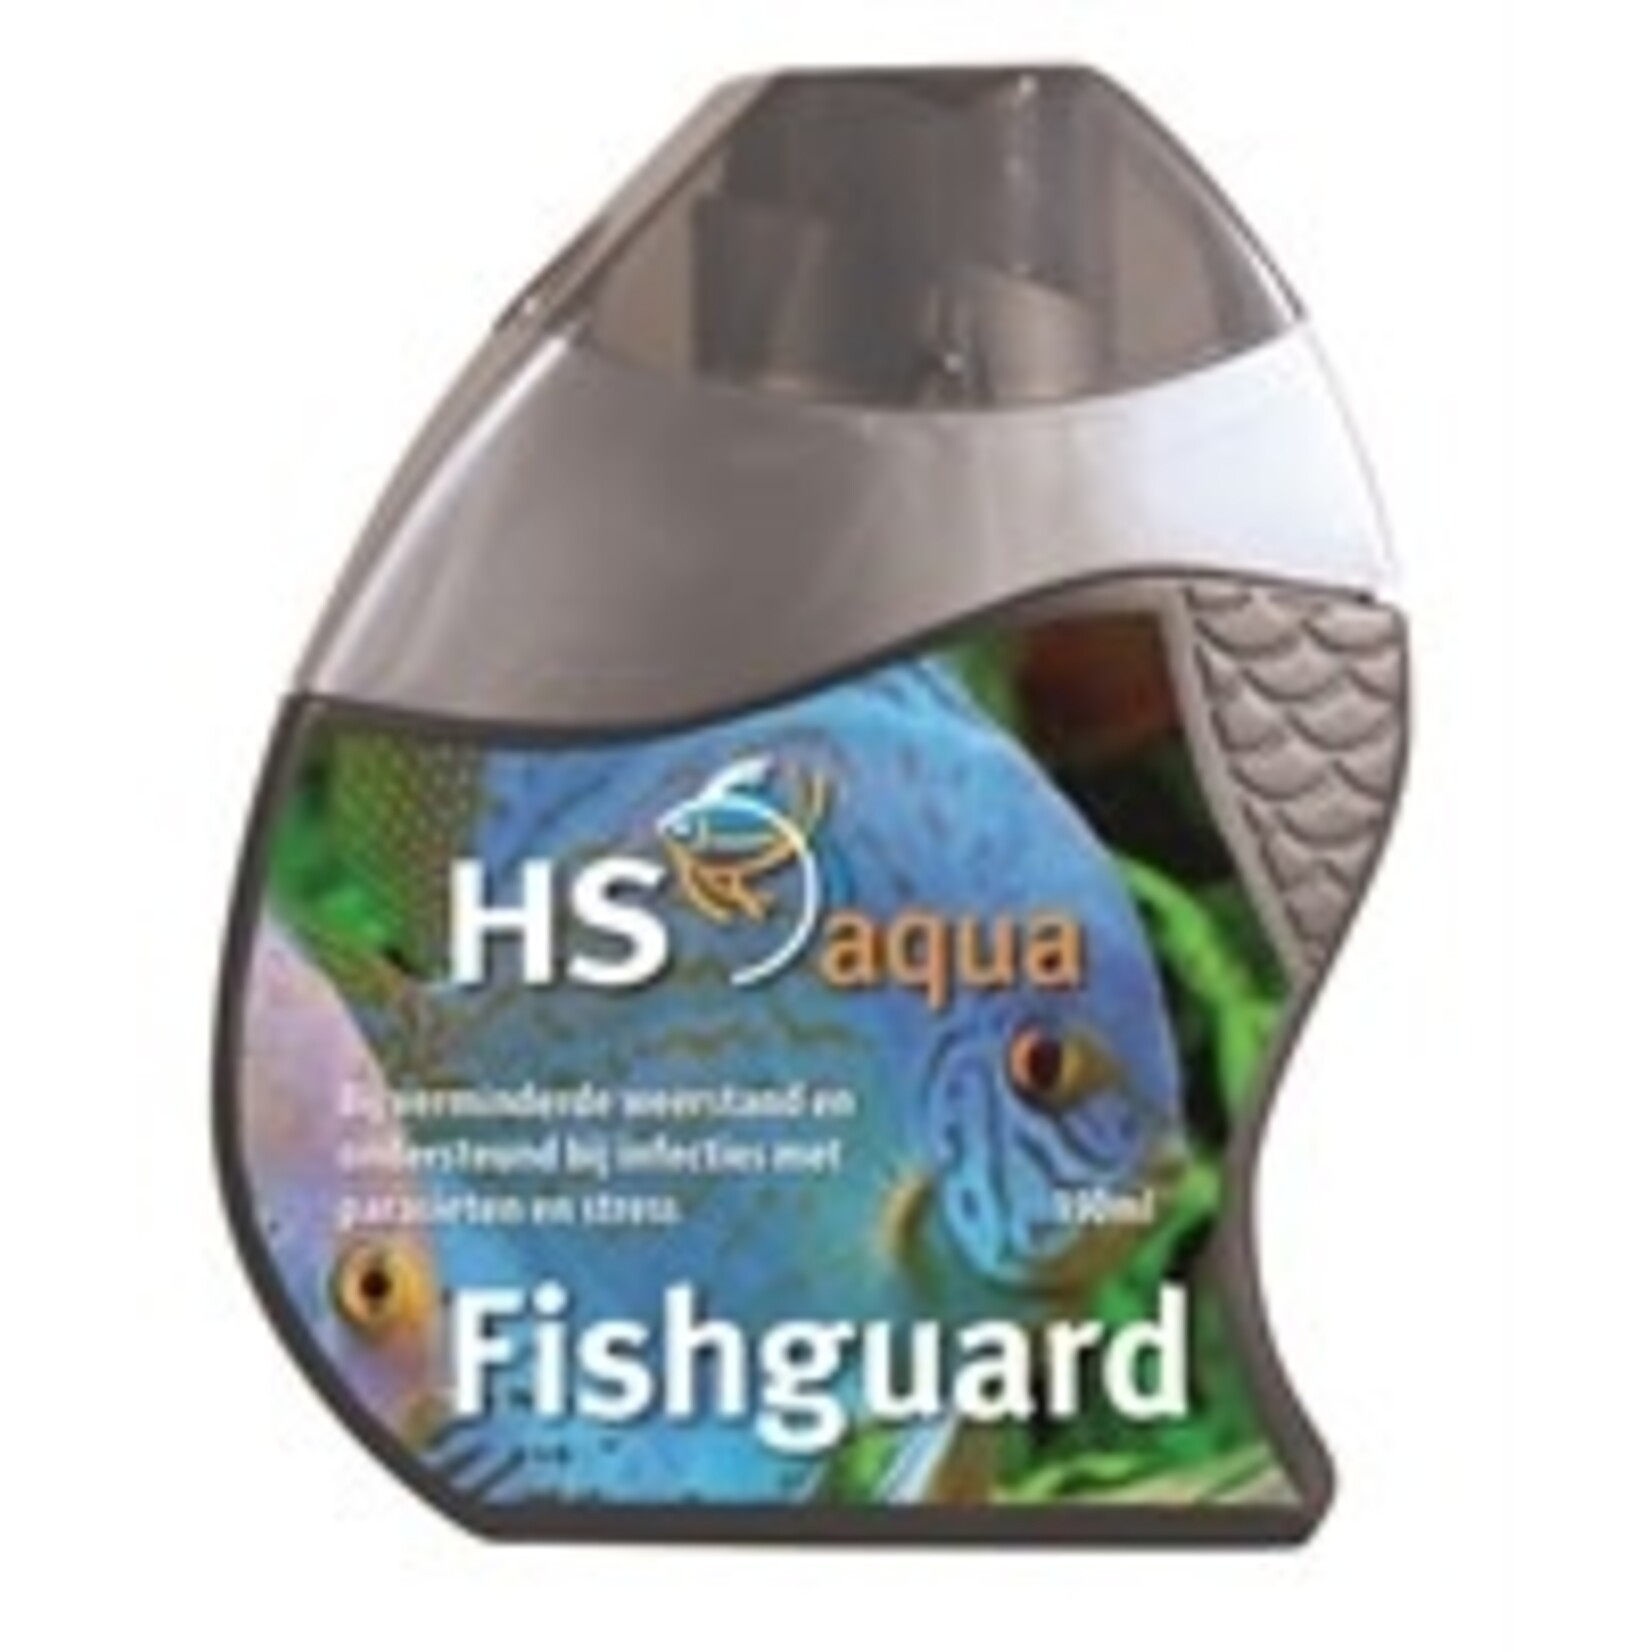 HS Aqua Fish guard 150 ml